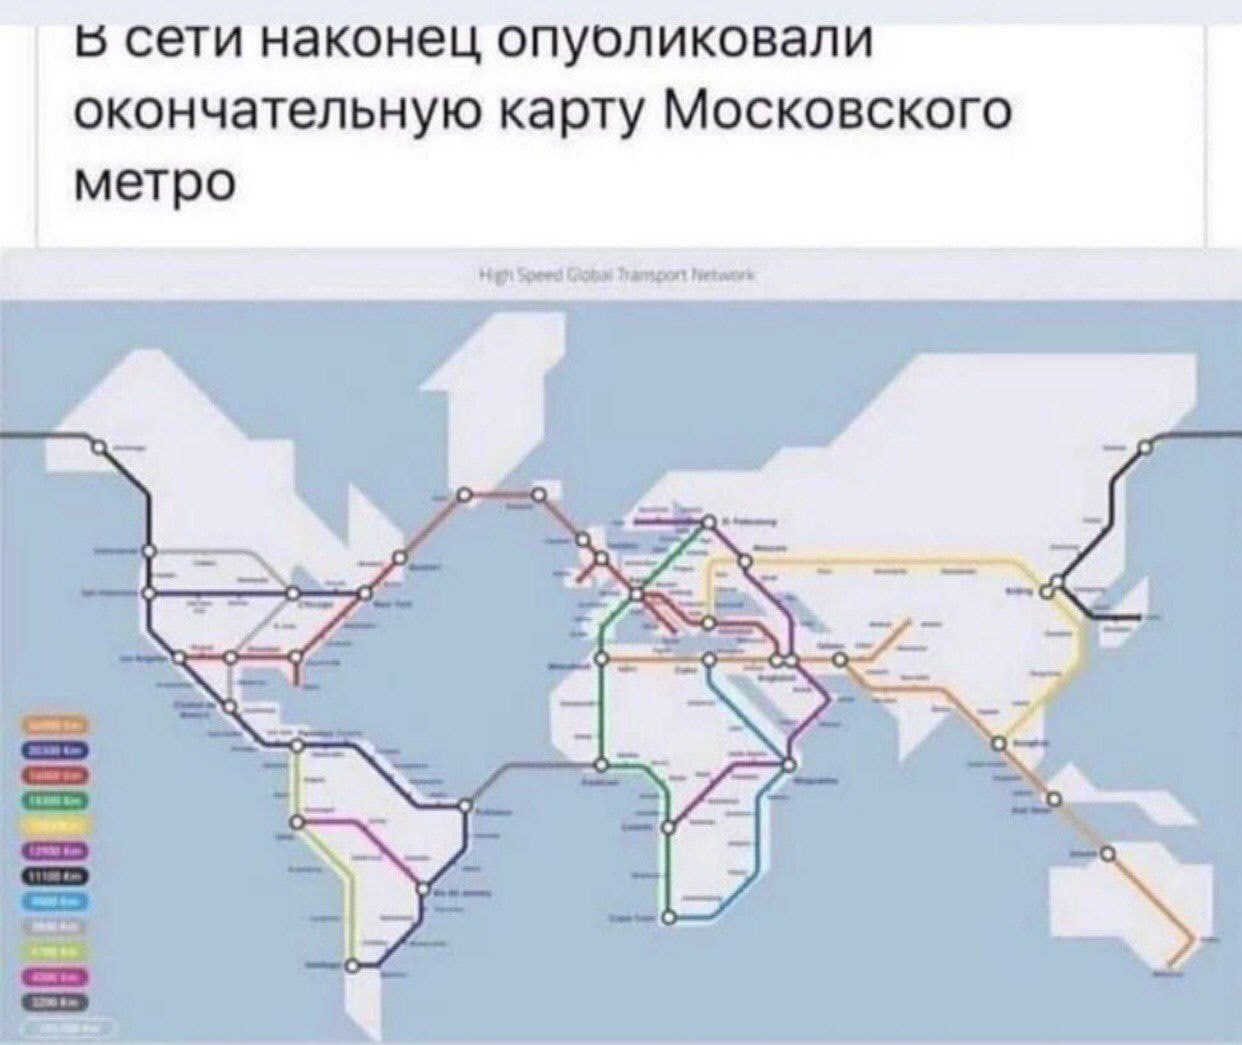 Б СЭТИ НЭКОНЭЦ ОПУОЛИКОВЭЛИ ОКОНЧЭТЭЛЬНУЮ карту МОСКОВСКОГО метро Вдйішіёі